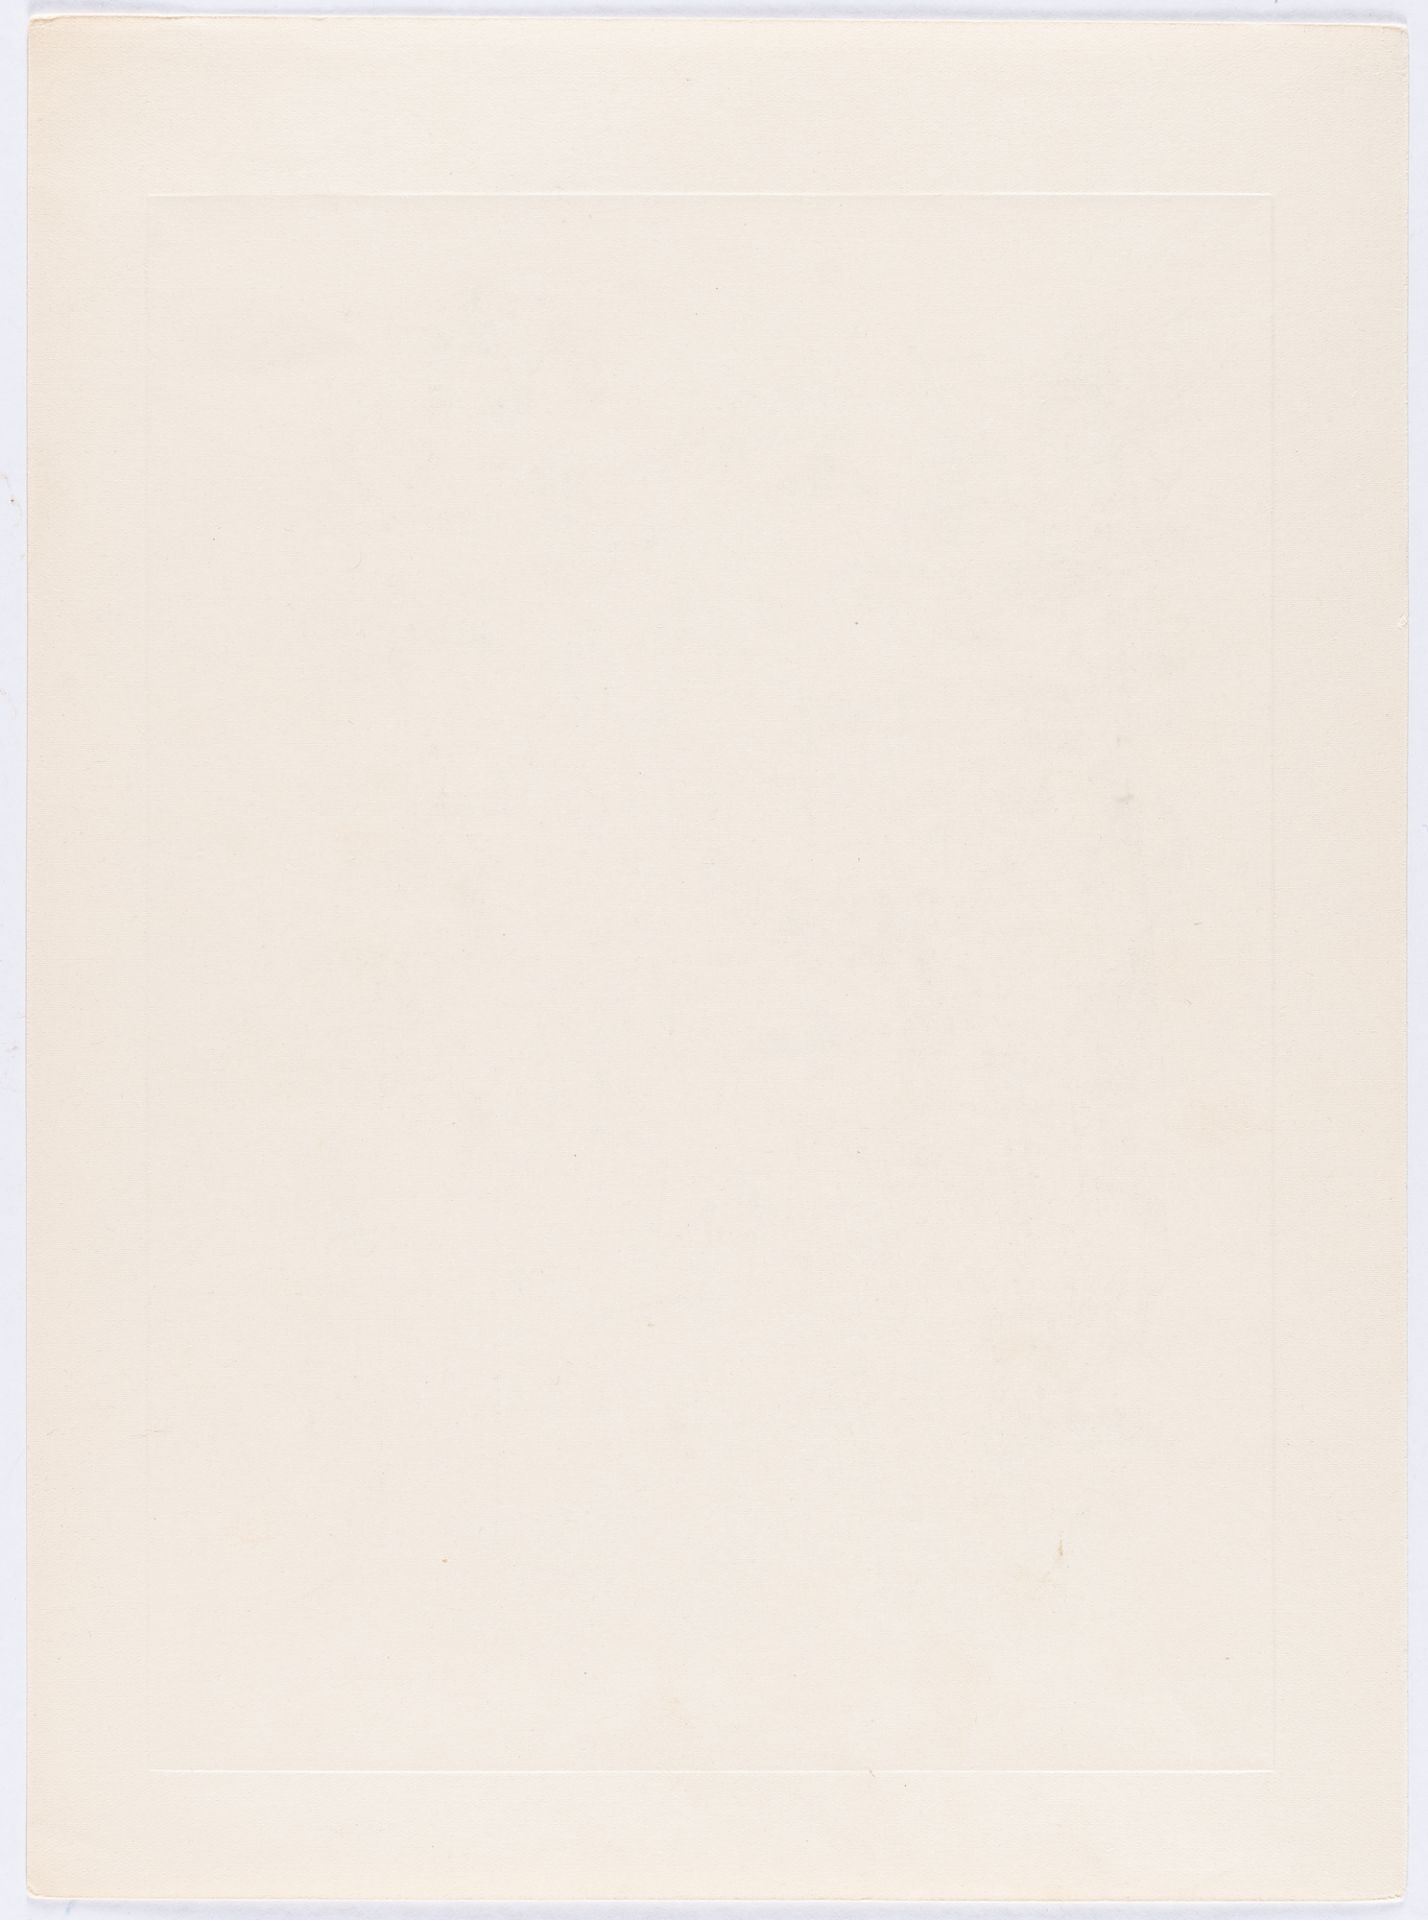 George Grosz - Bild 3 aus 3